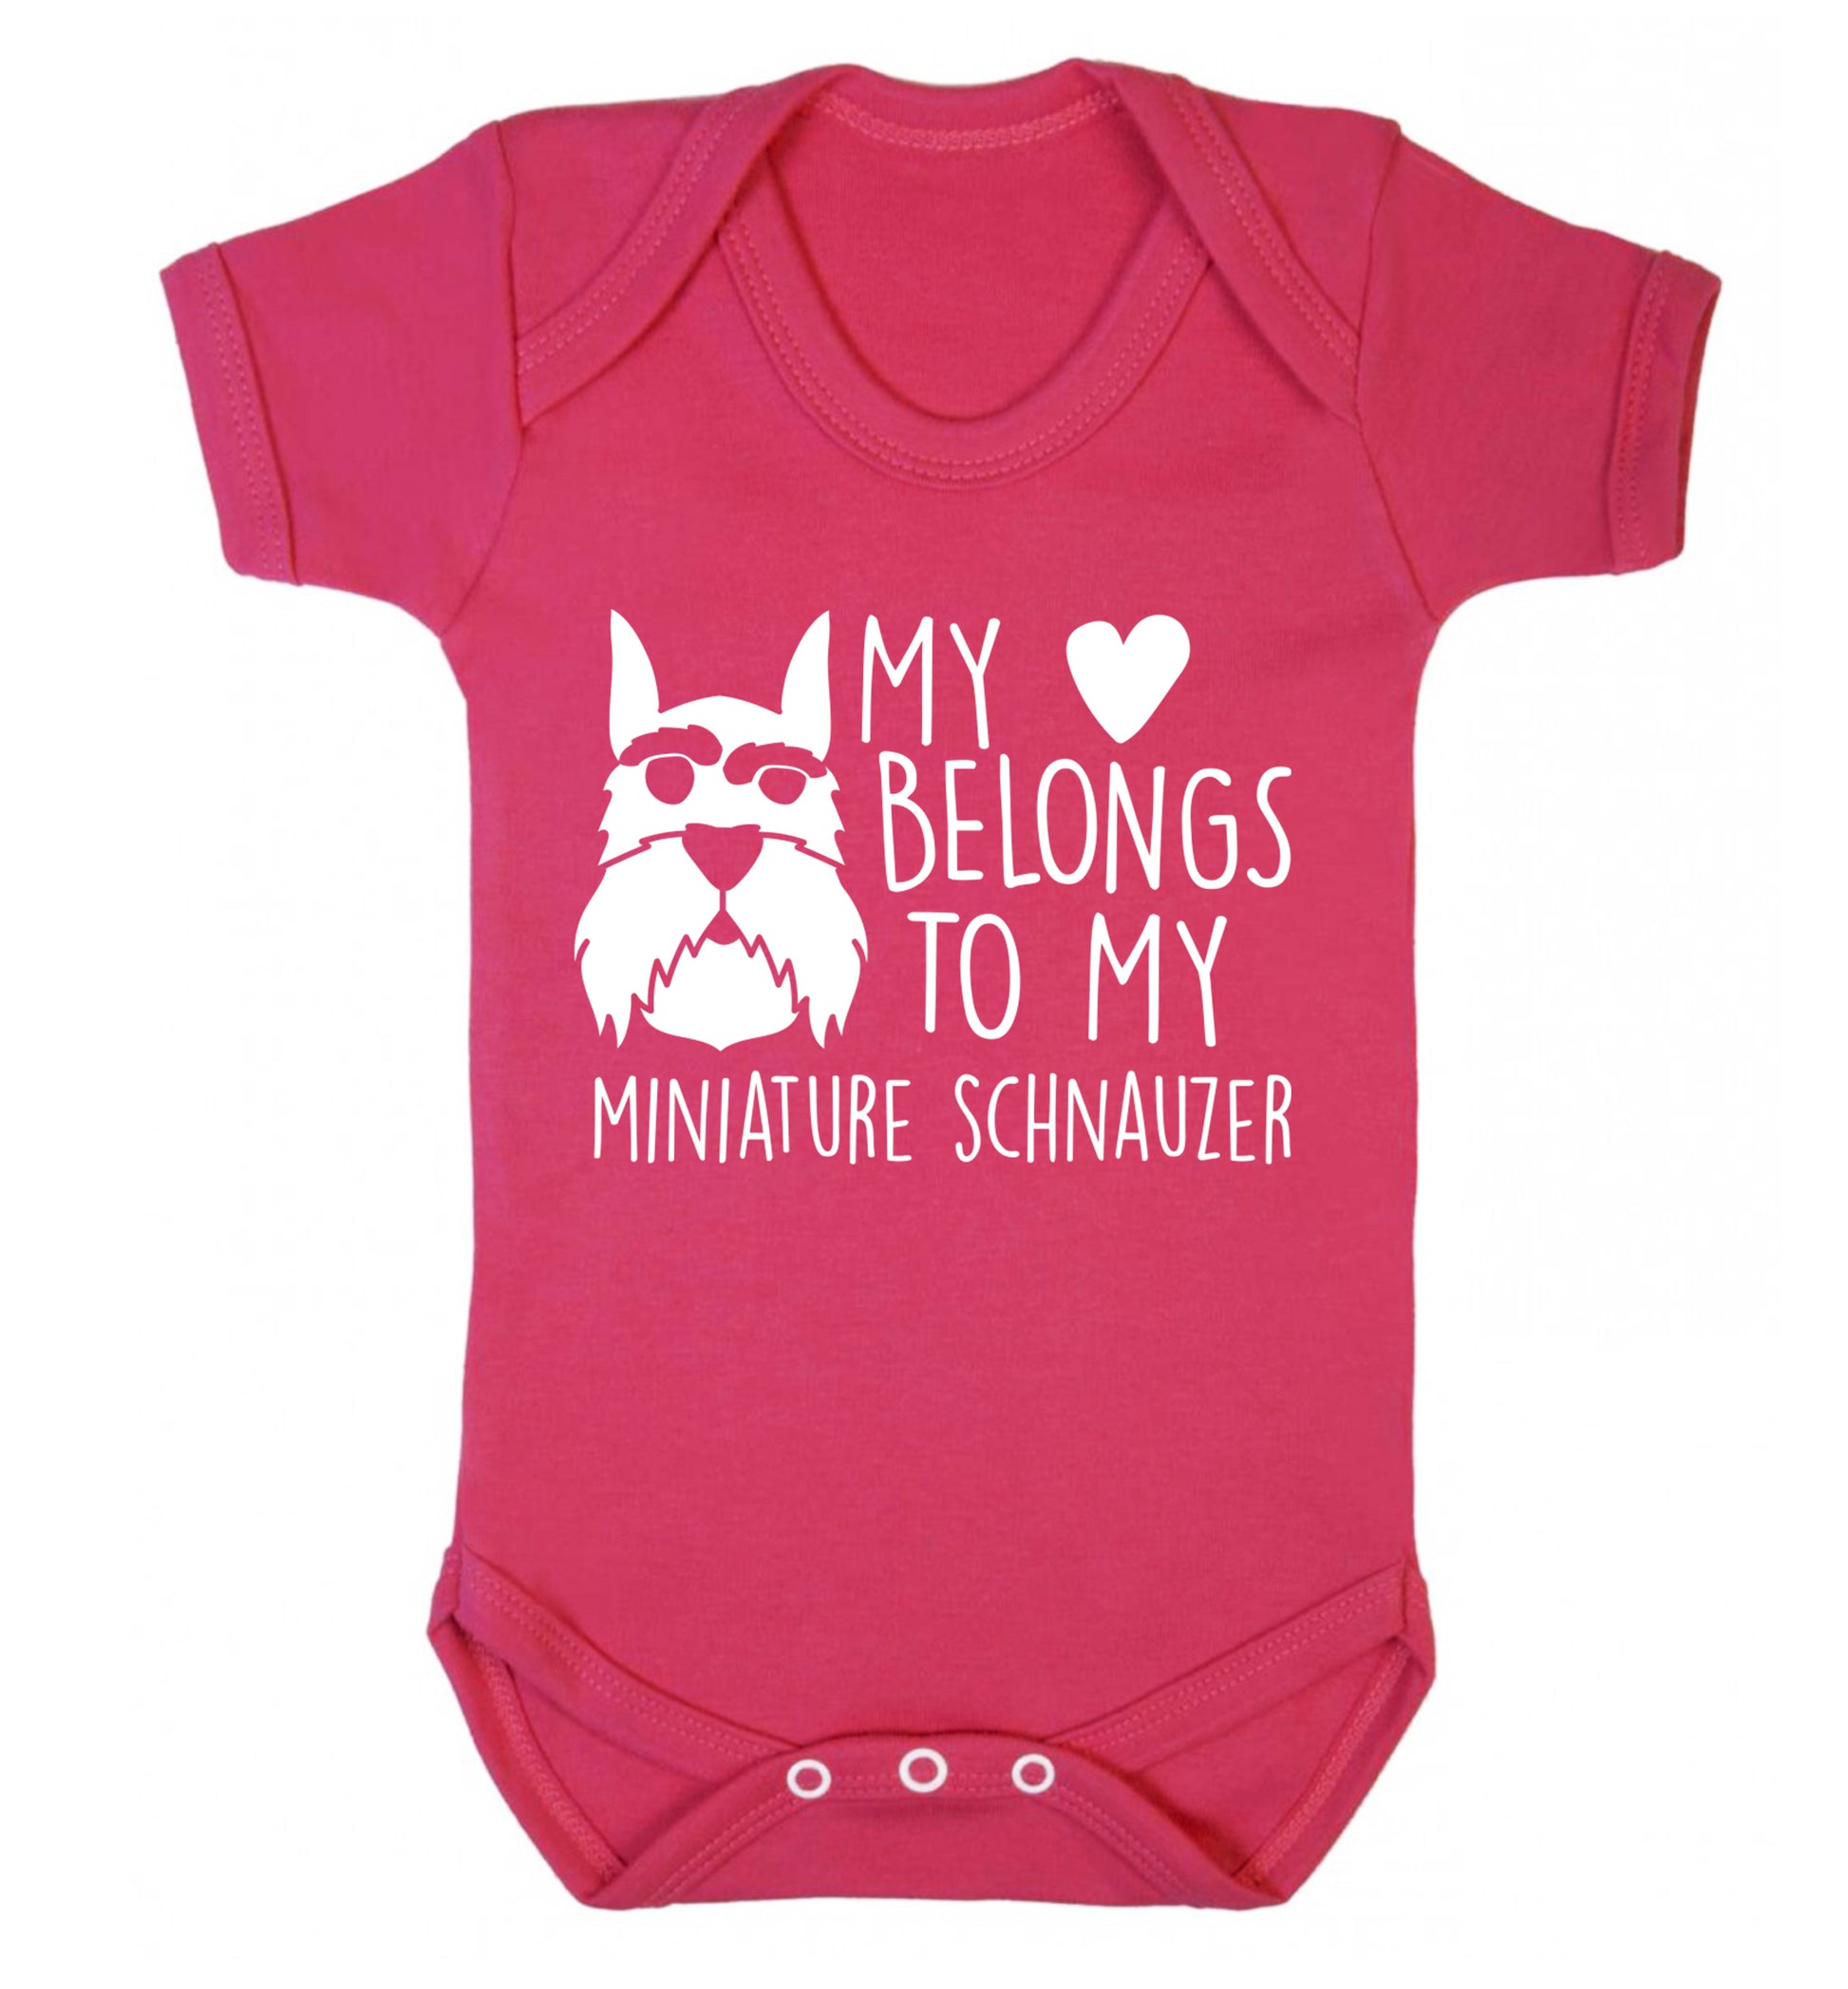 My heart belongs to my miniature schnauzer Baby Vest dark pink 18-24 months